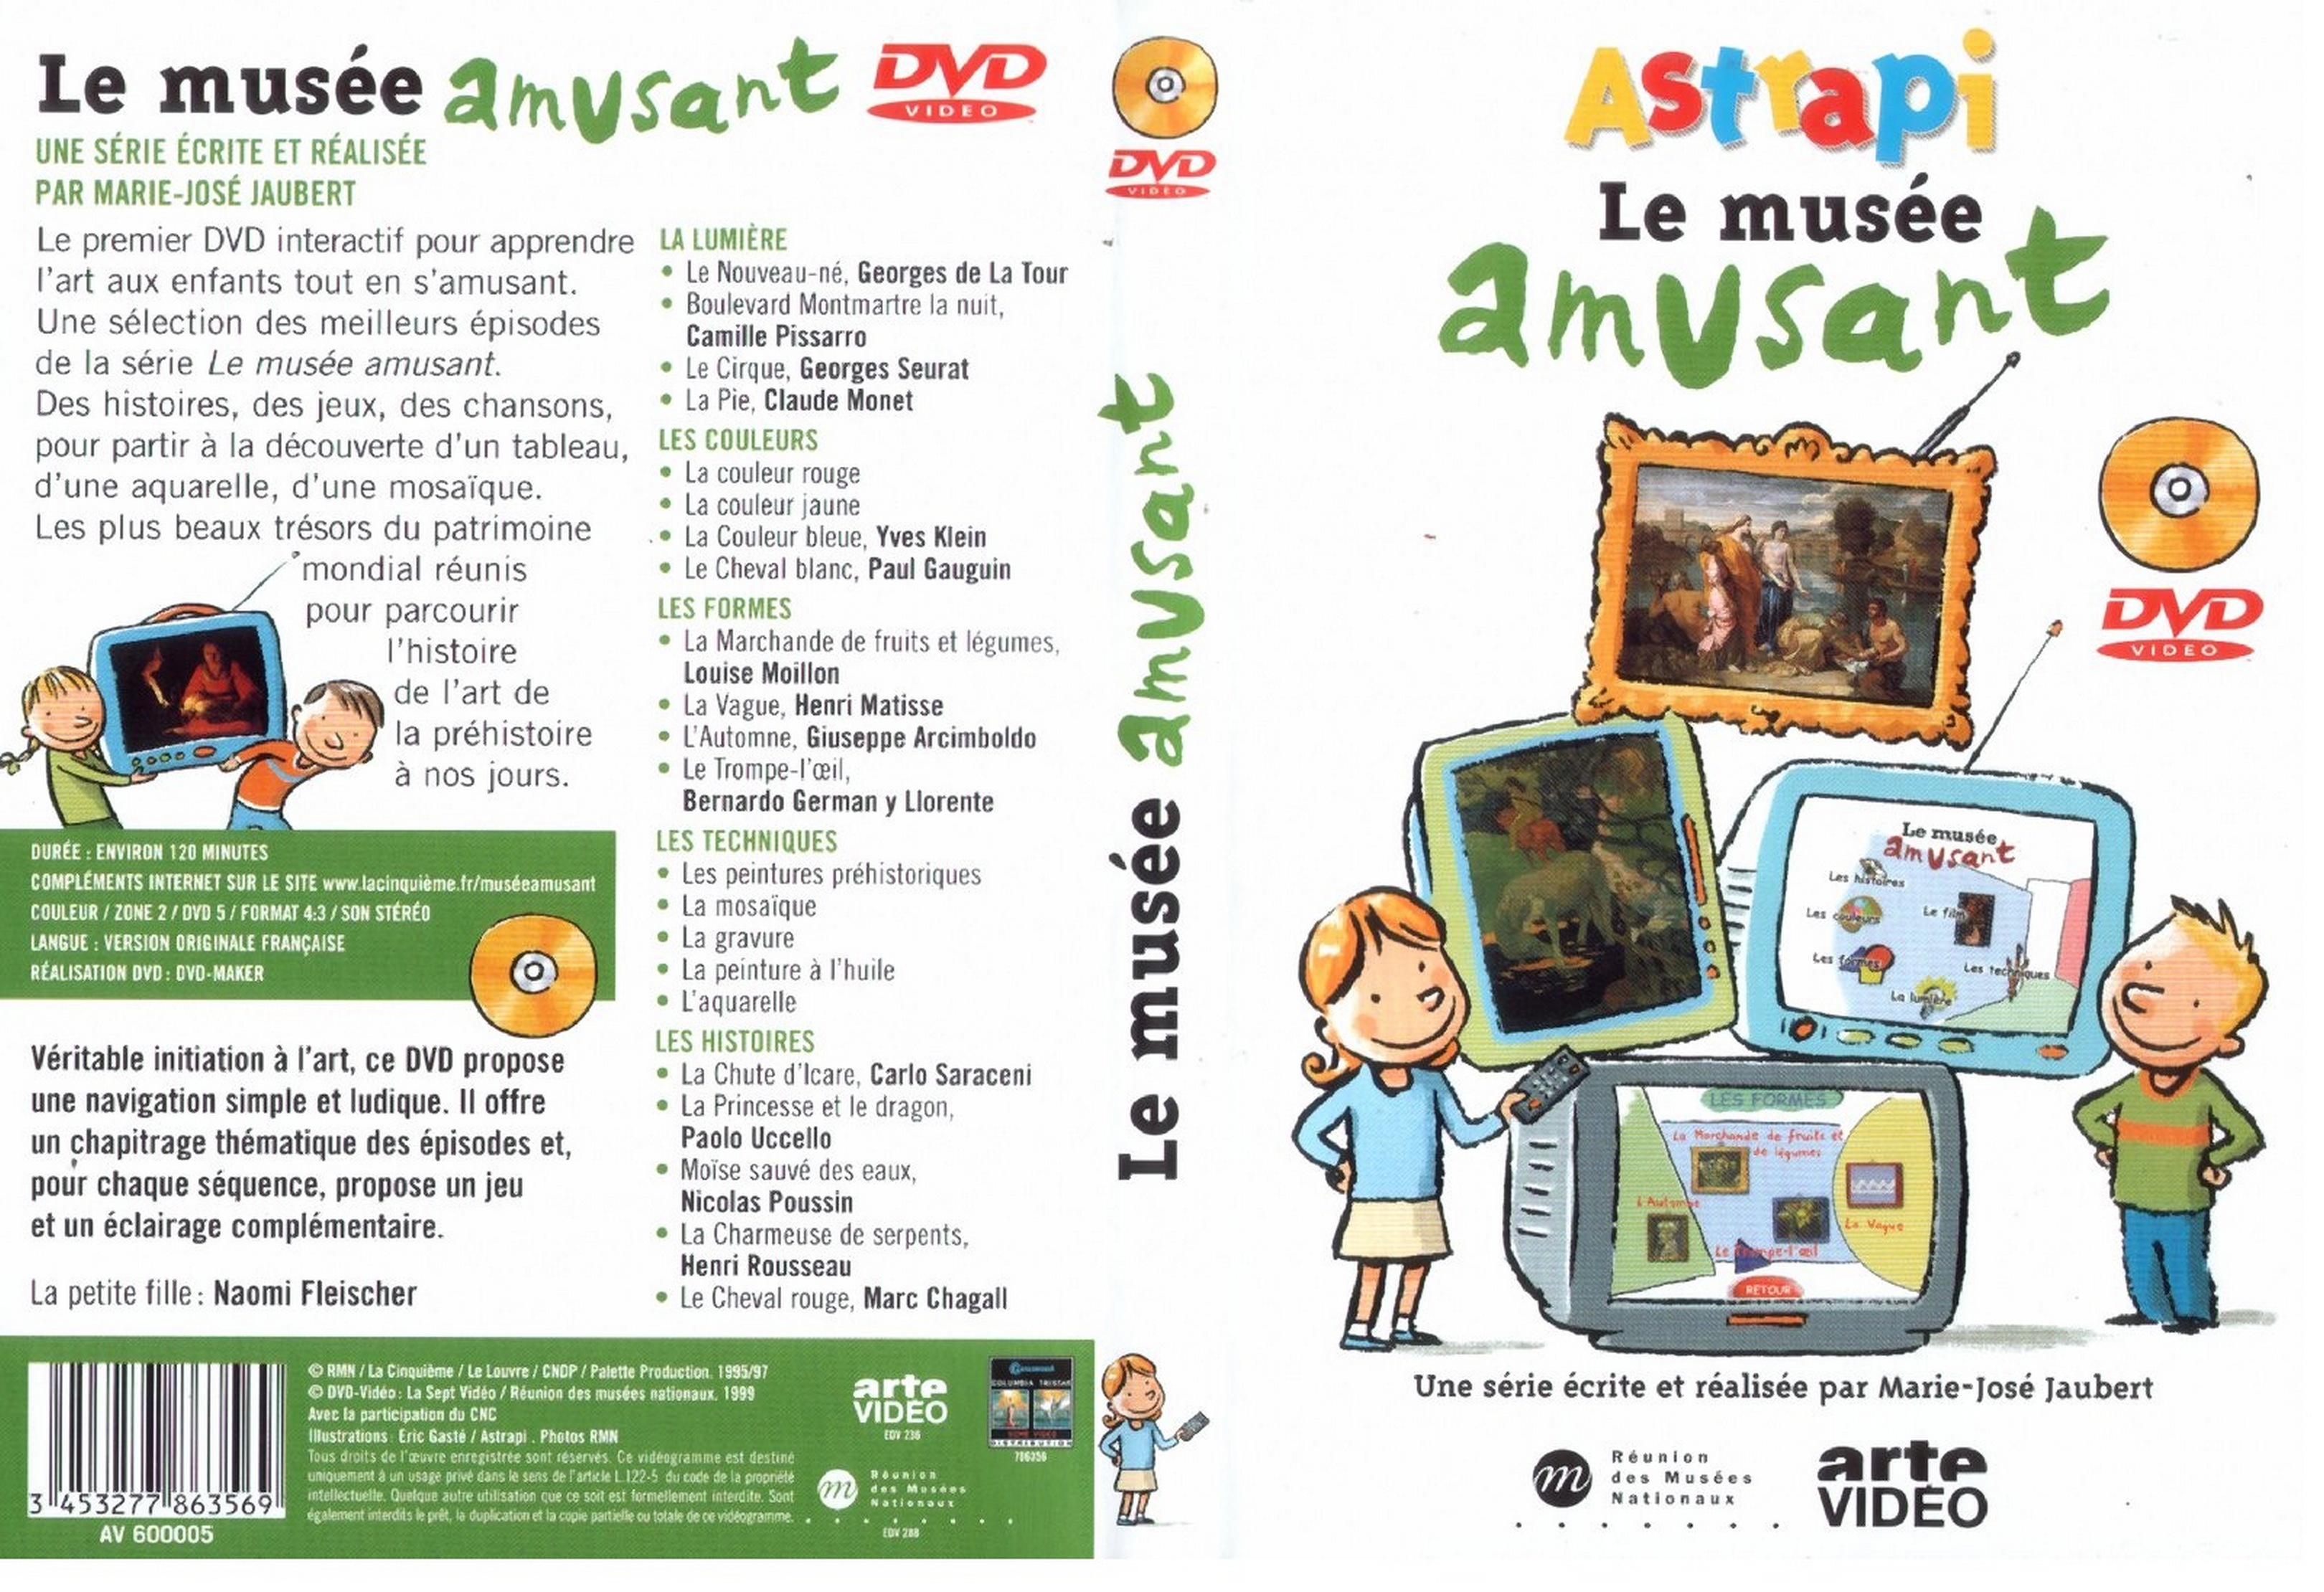 Jaquette DVD Astrapi - Le muse amusant